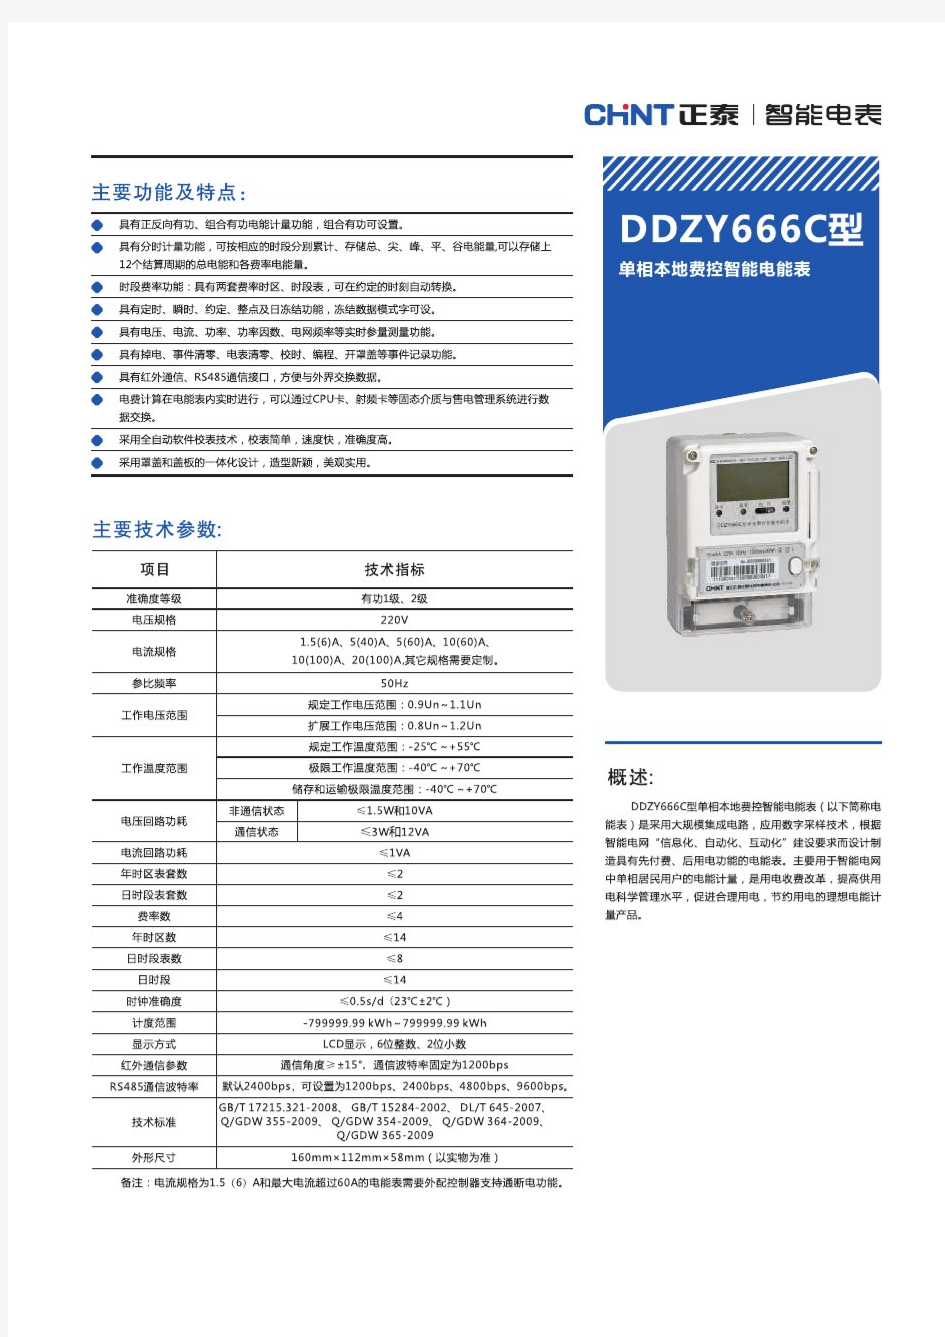 DDZY666C型单相费控智能电能表产品样本